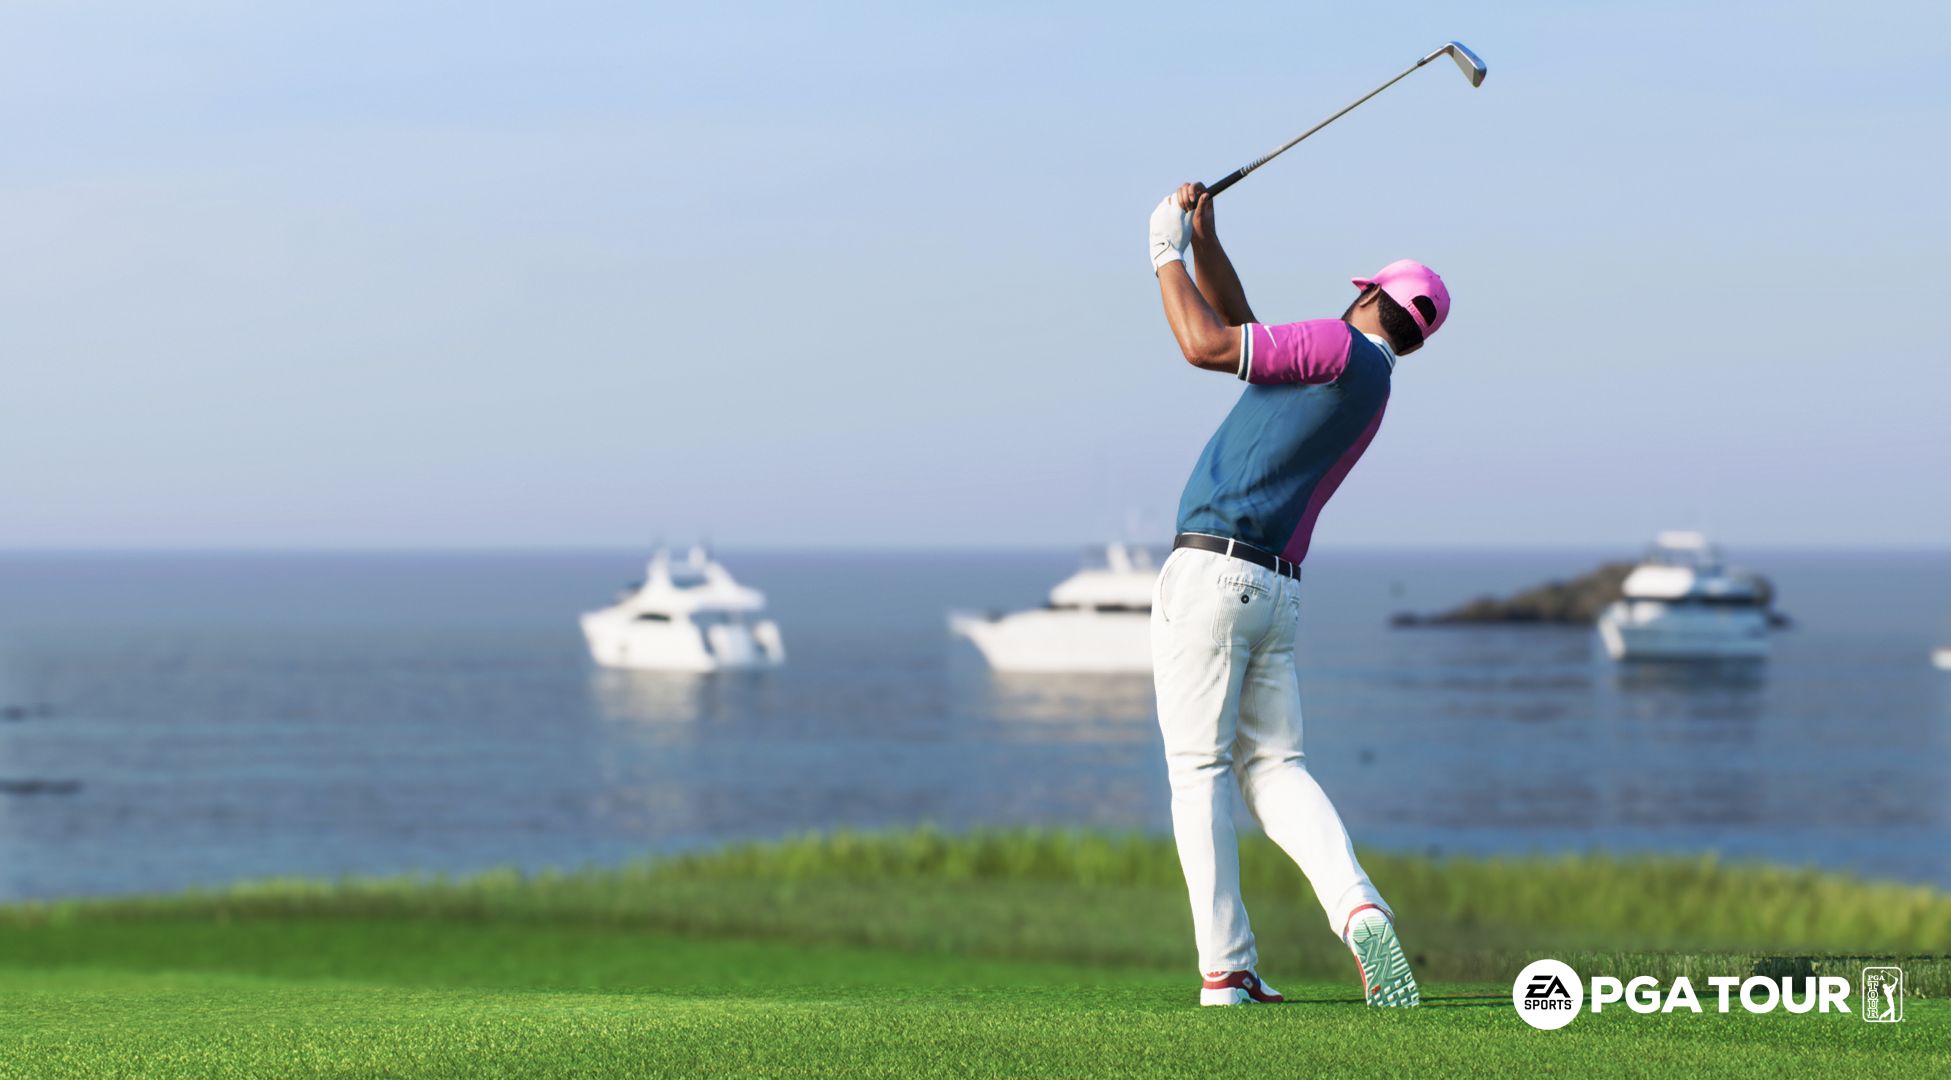 EA Sports PGA Tour از هلیکوپترهای اسکن لیزری و موارد دیگر برای ارائه واقعی ترین بازی گلف استفاده می کند